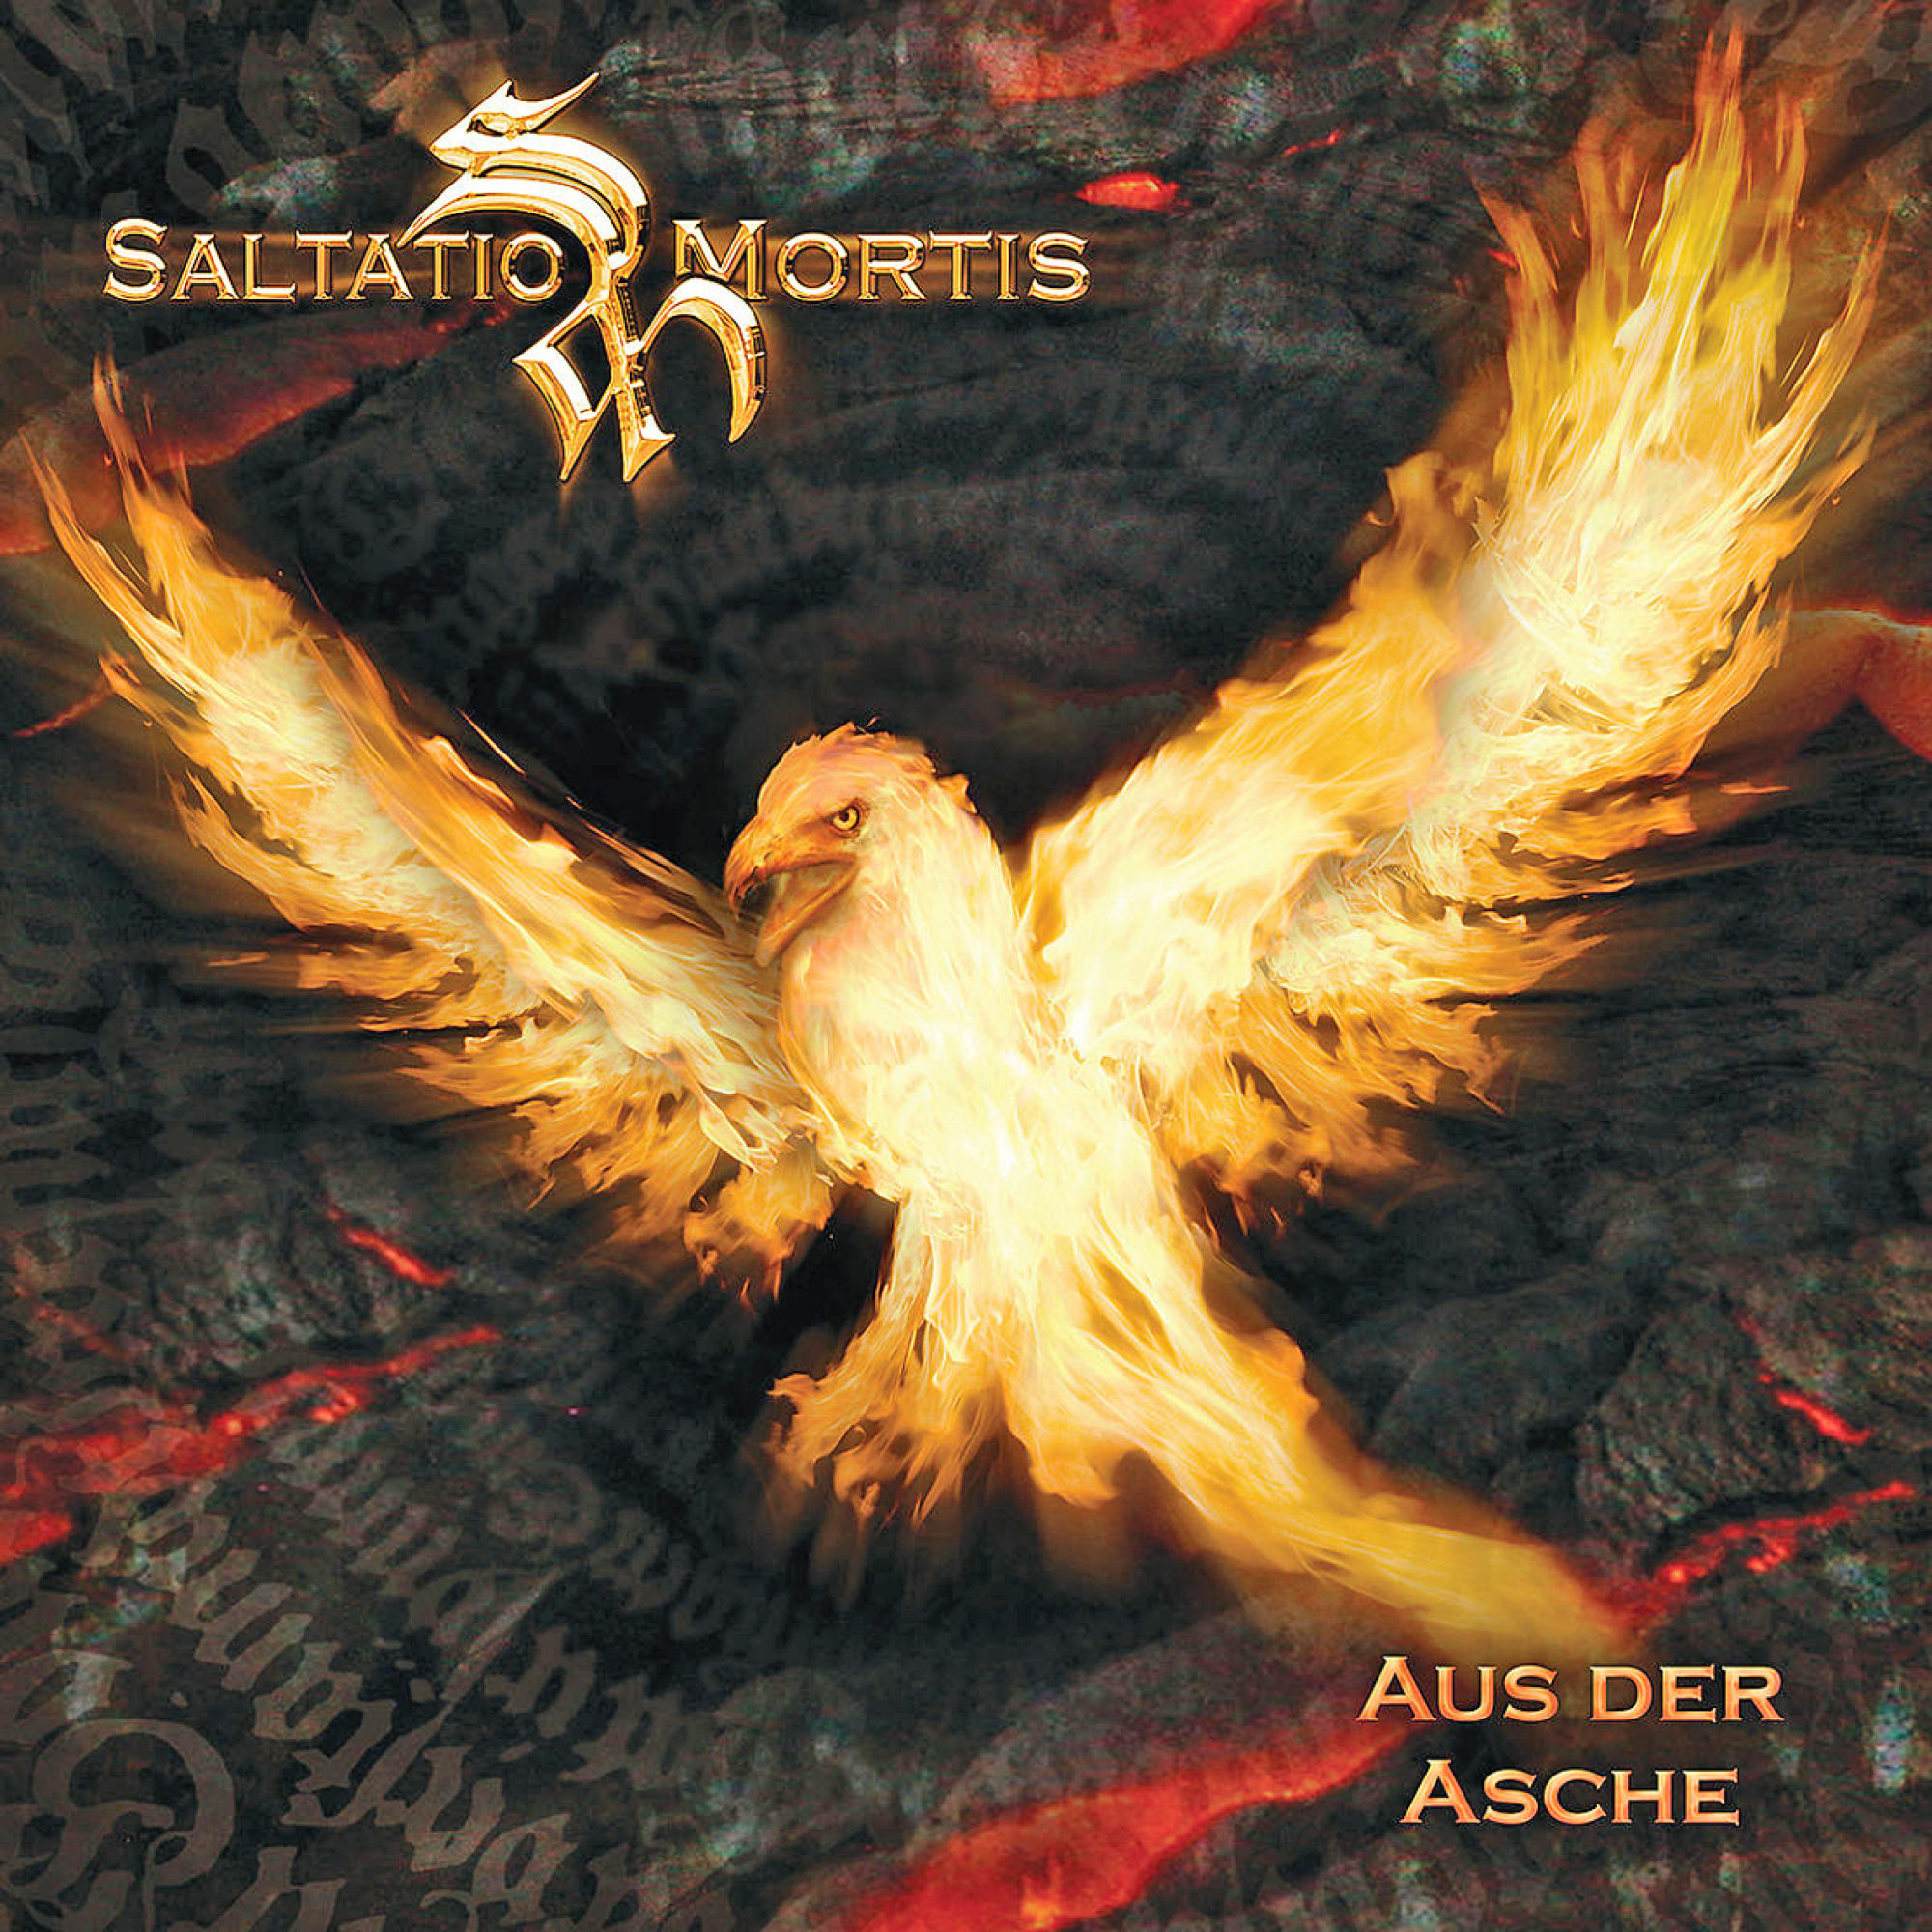 Saltatio Mortis - AUS (CD) - ASCHE DER